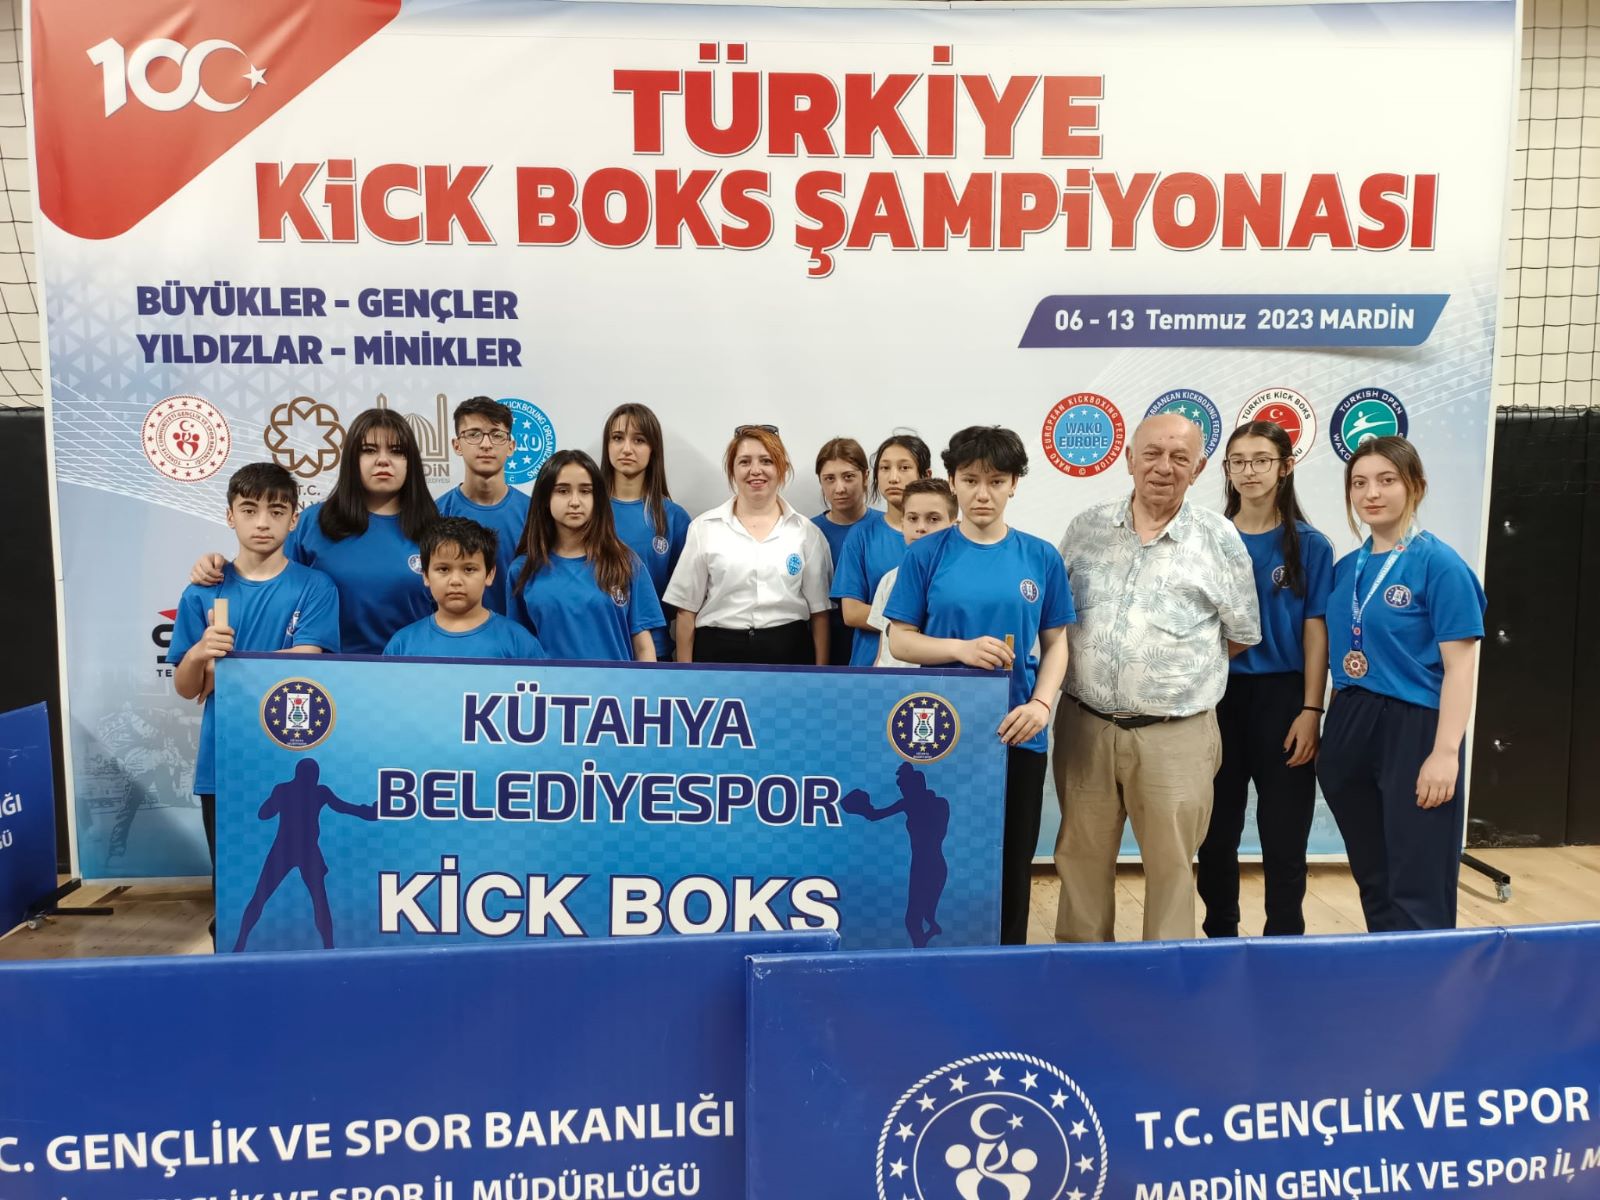 Kick boksçular Türkiye Şampiyonası’ndan 7 madalyayla döndü